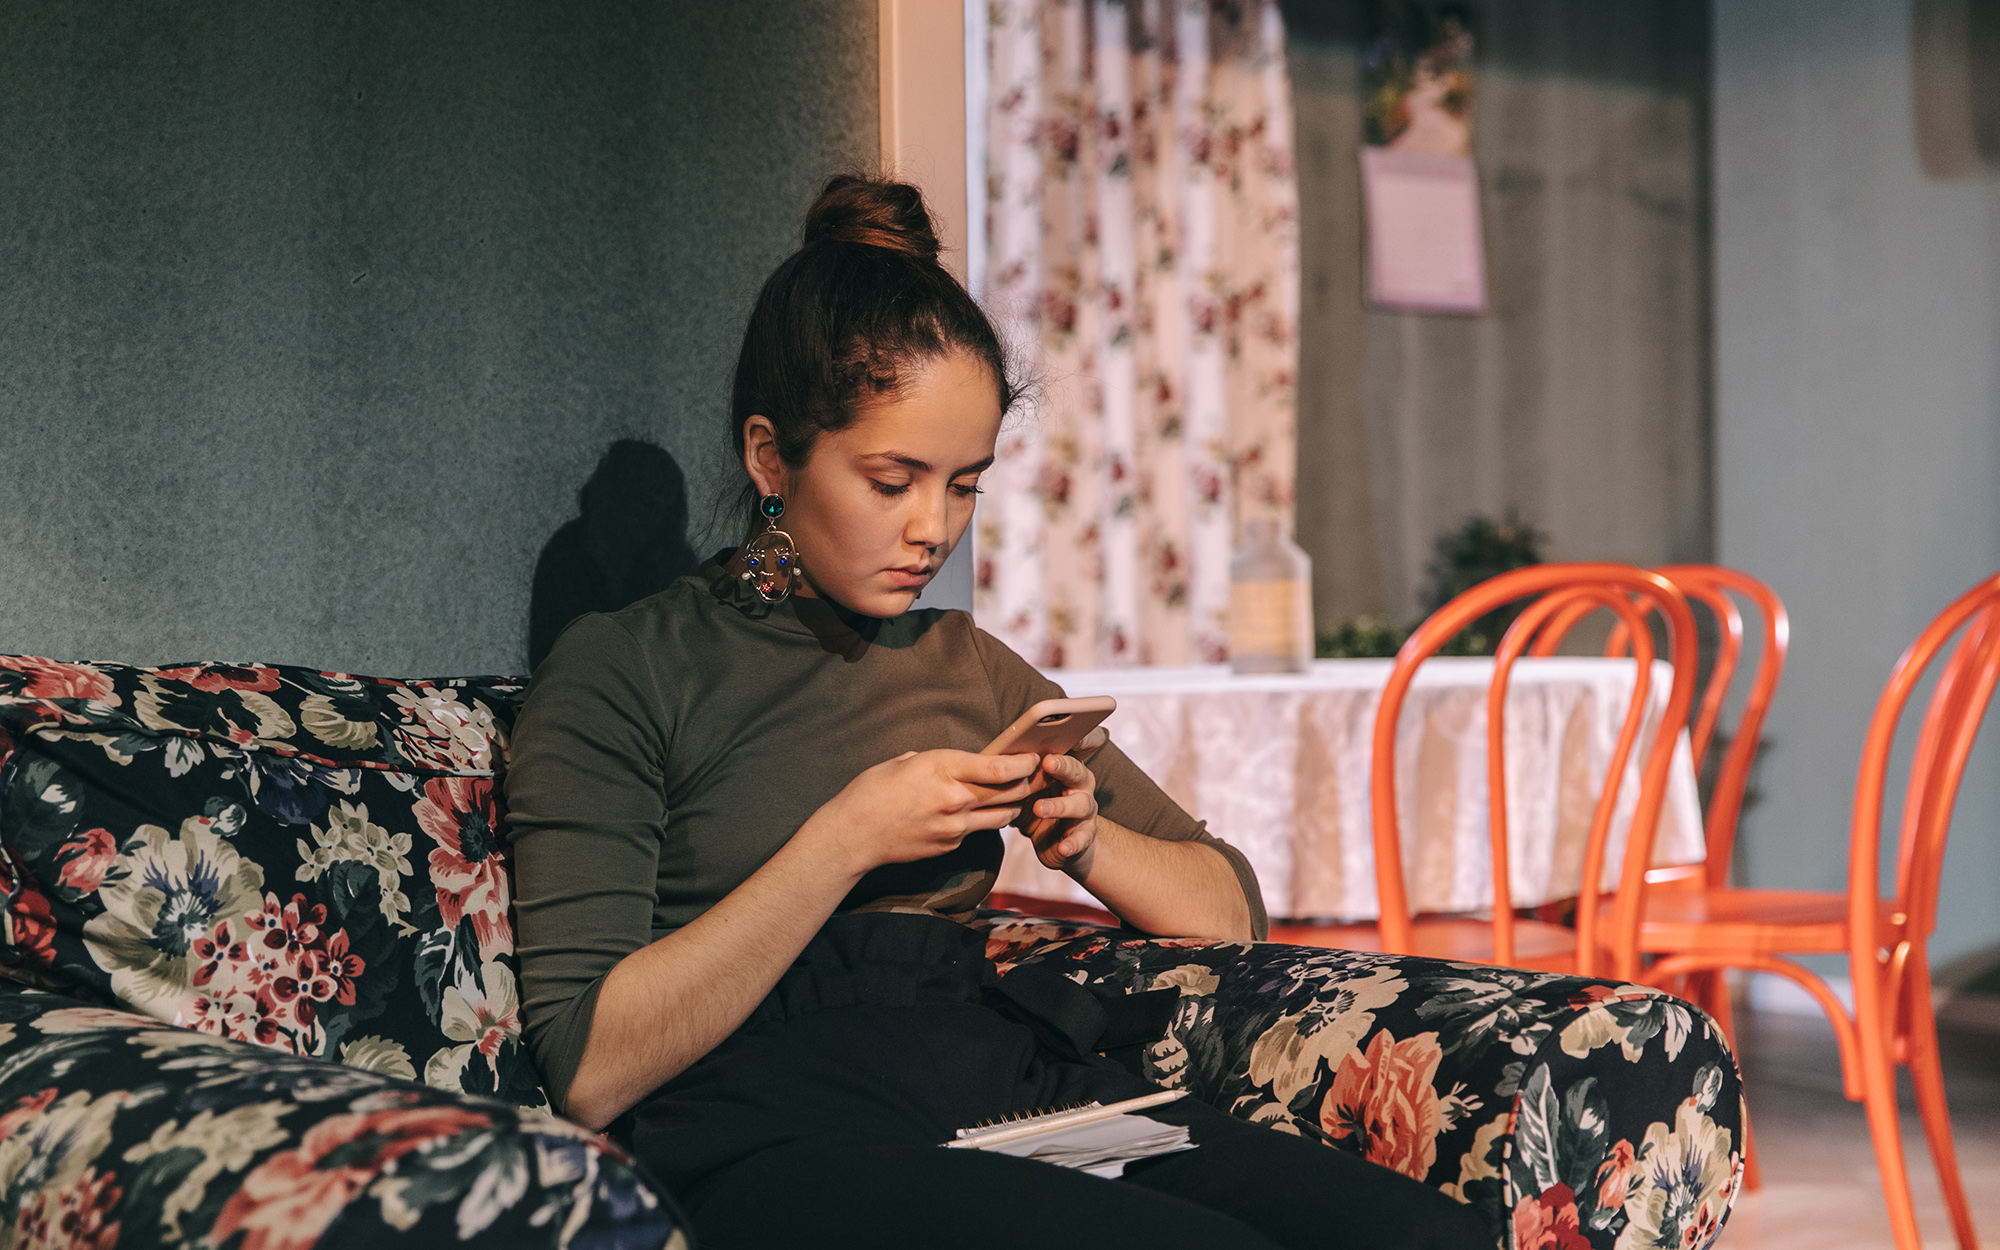 Tamala (Lara Wolf) sedi v naslanjaču in gleda v mobilni telefon. Avtor fotografije: Peter Giodani.